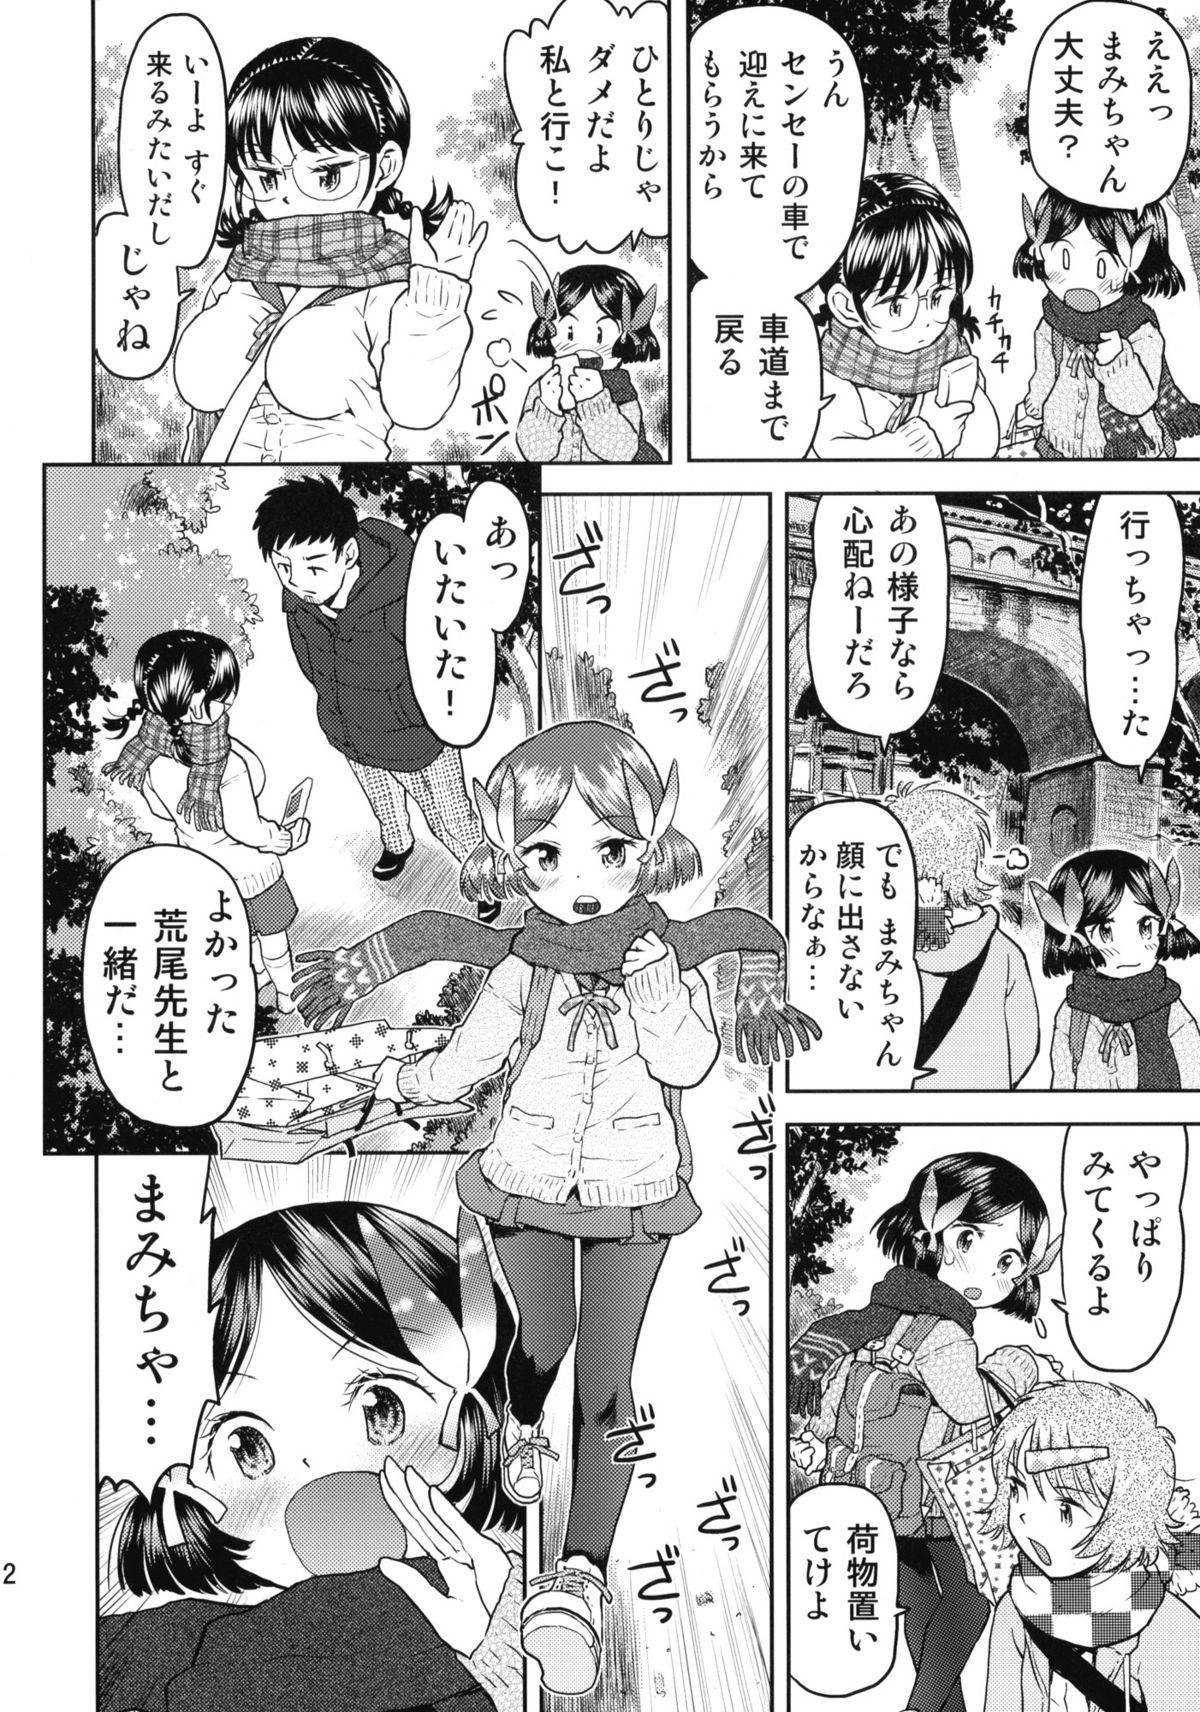 Eating Shuugaku Ryokou no Shiori Futsukame Girl Girl - Page 11